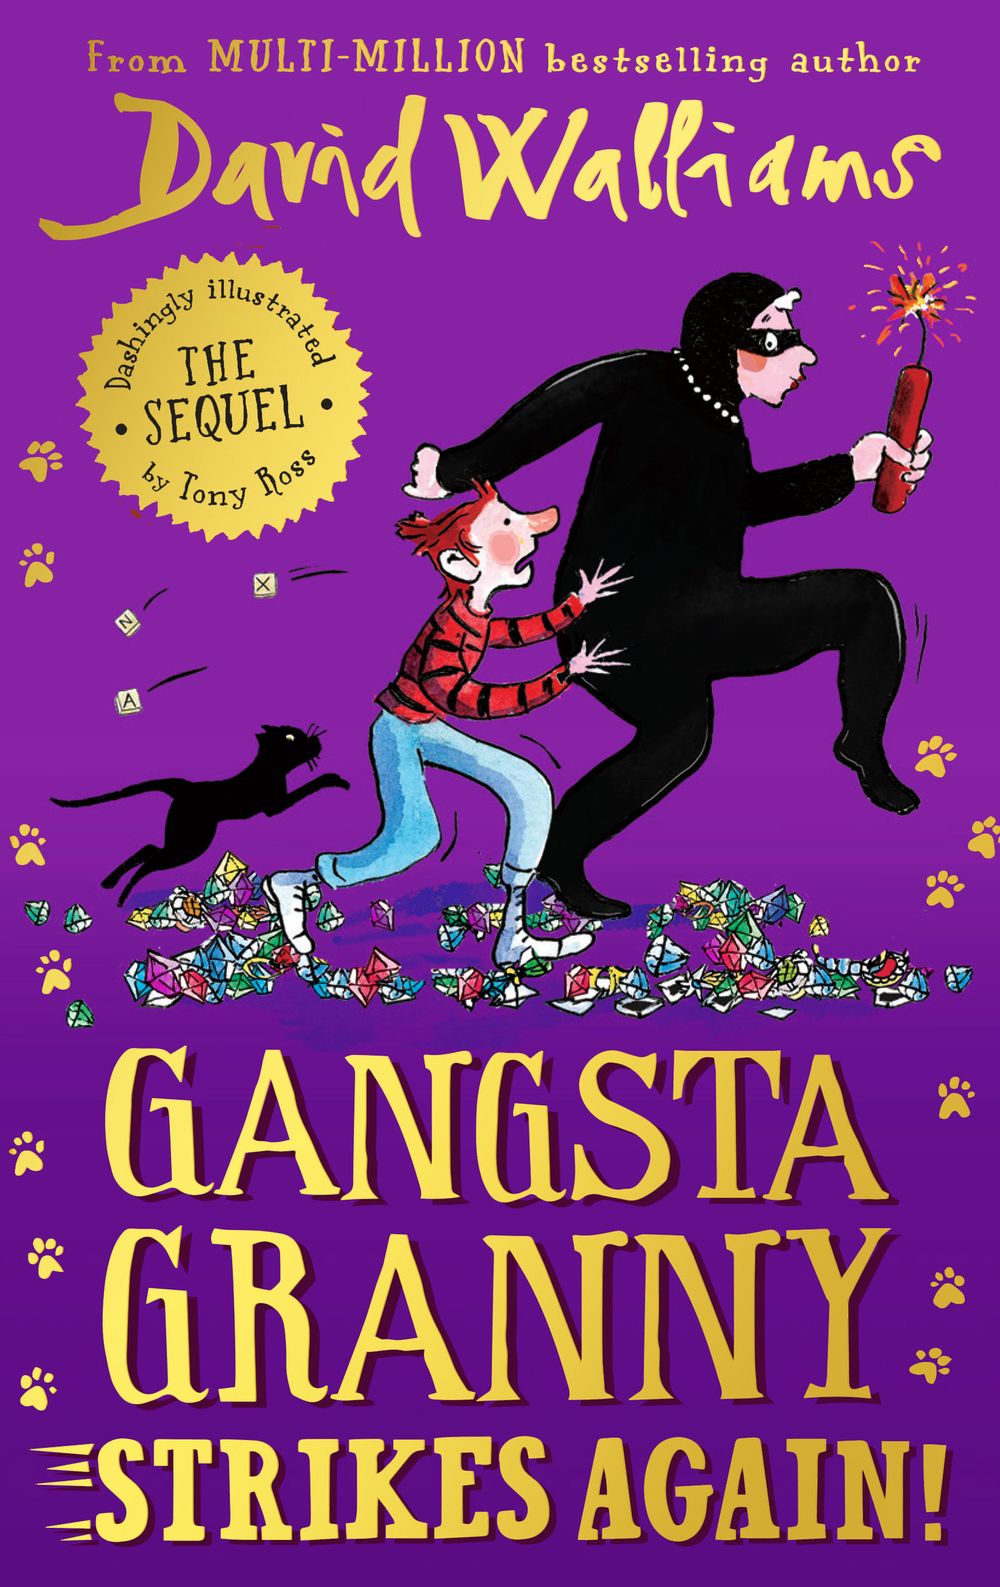 Gangsta Granny Strikes Again by David Walliams